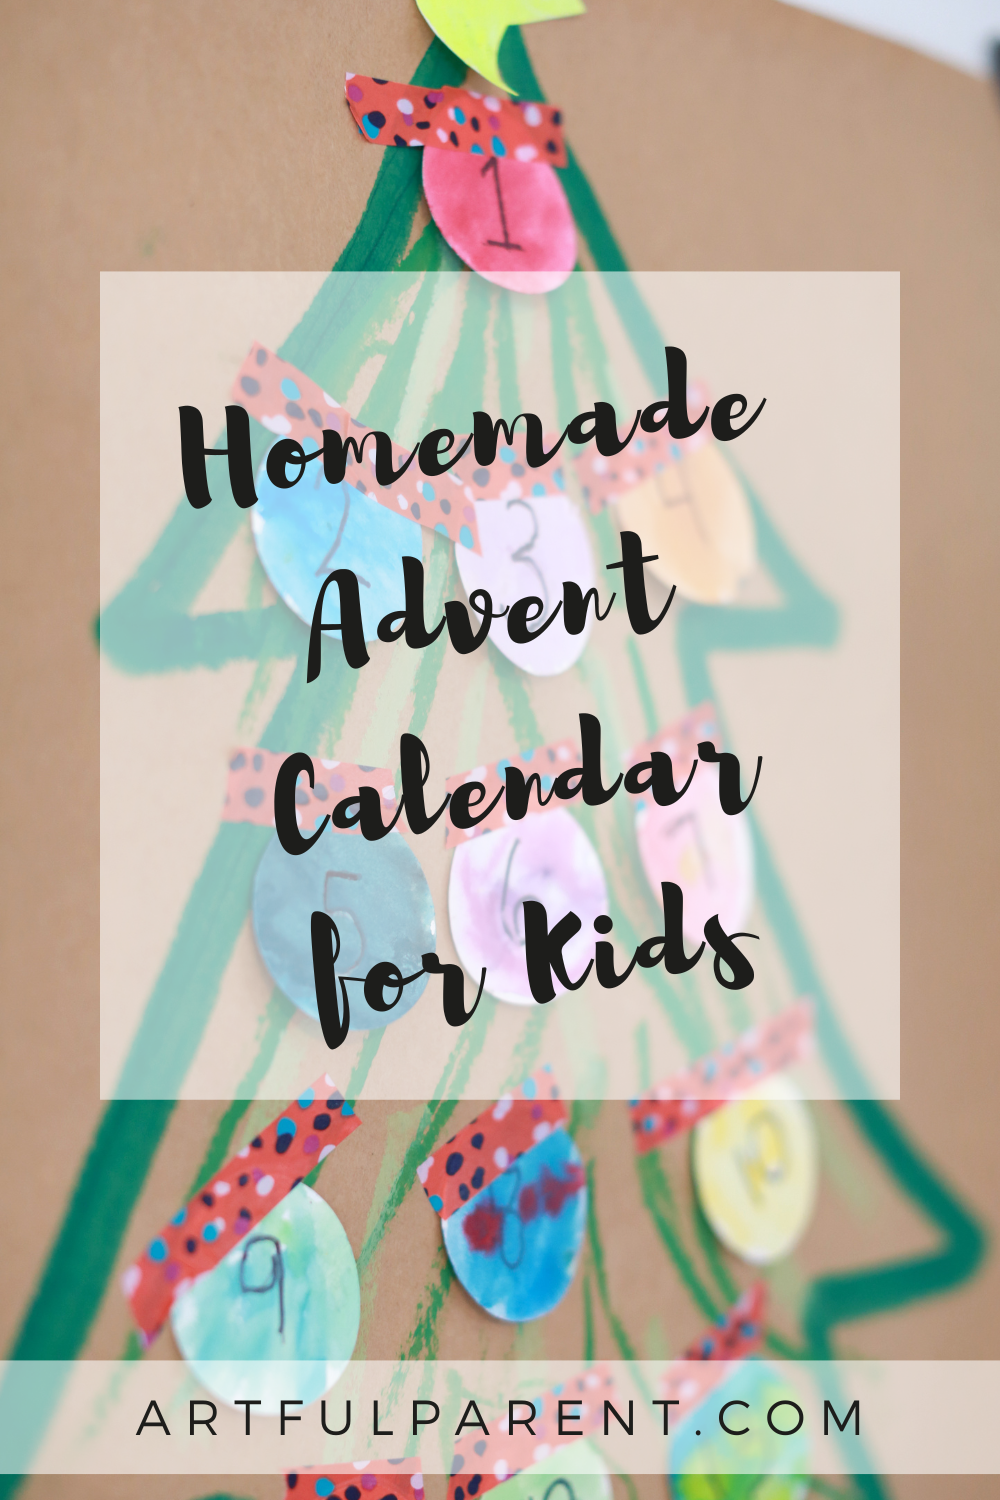 How to Make a Homemade Advent Calendar